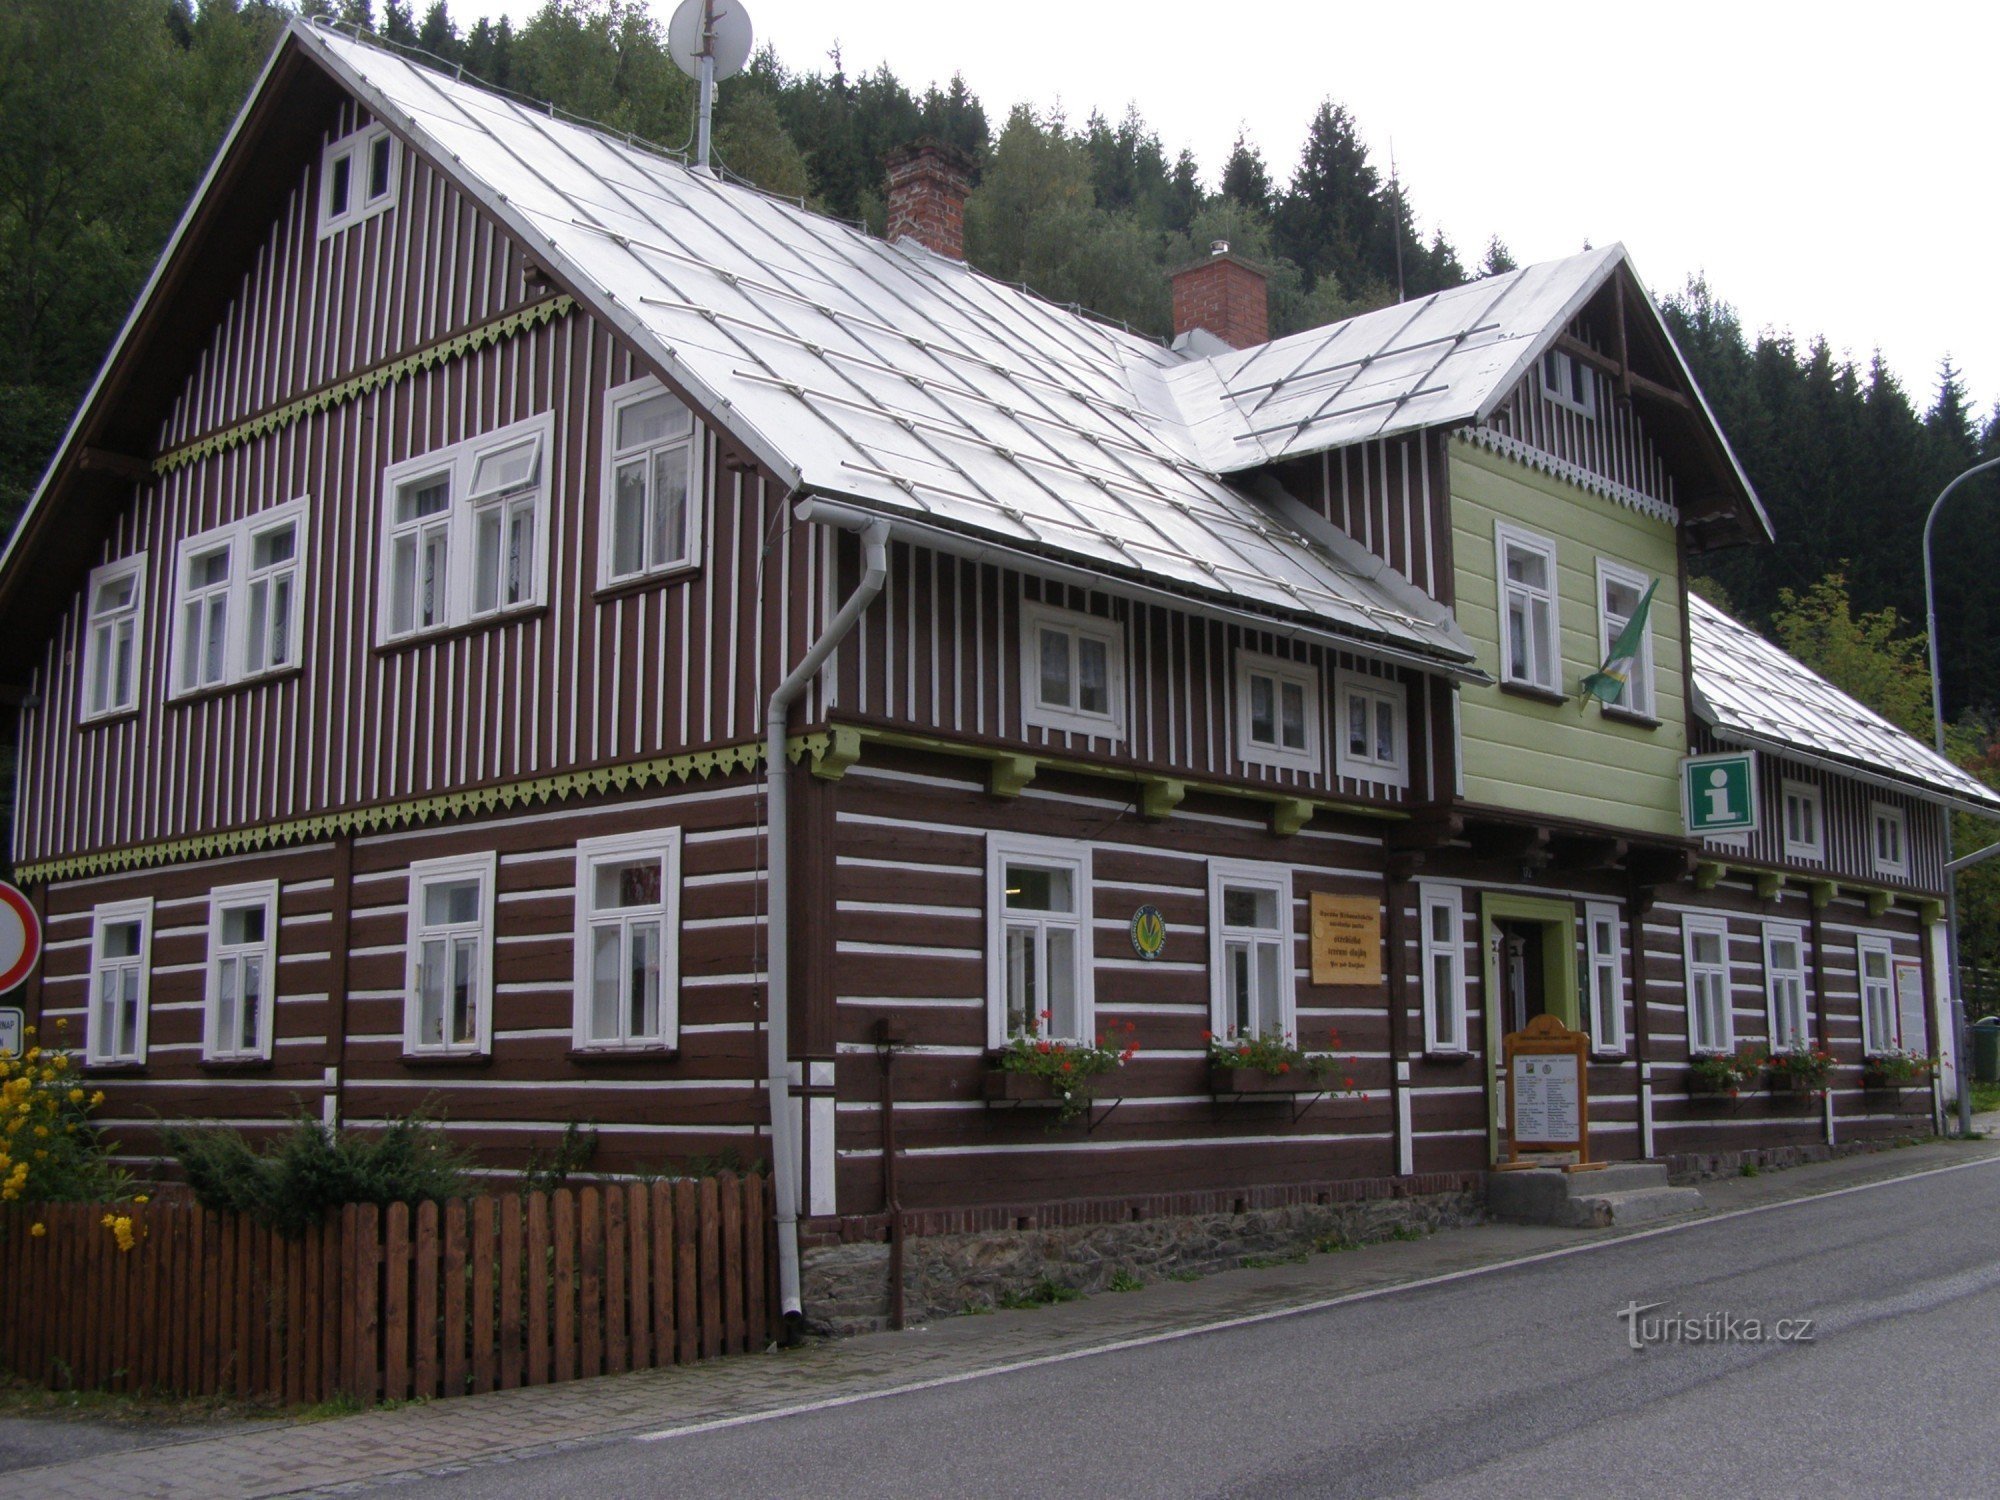 Pec pod Sněžkou - information center of the KRNAP administration